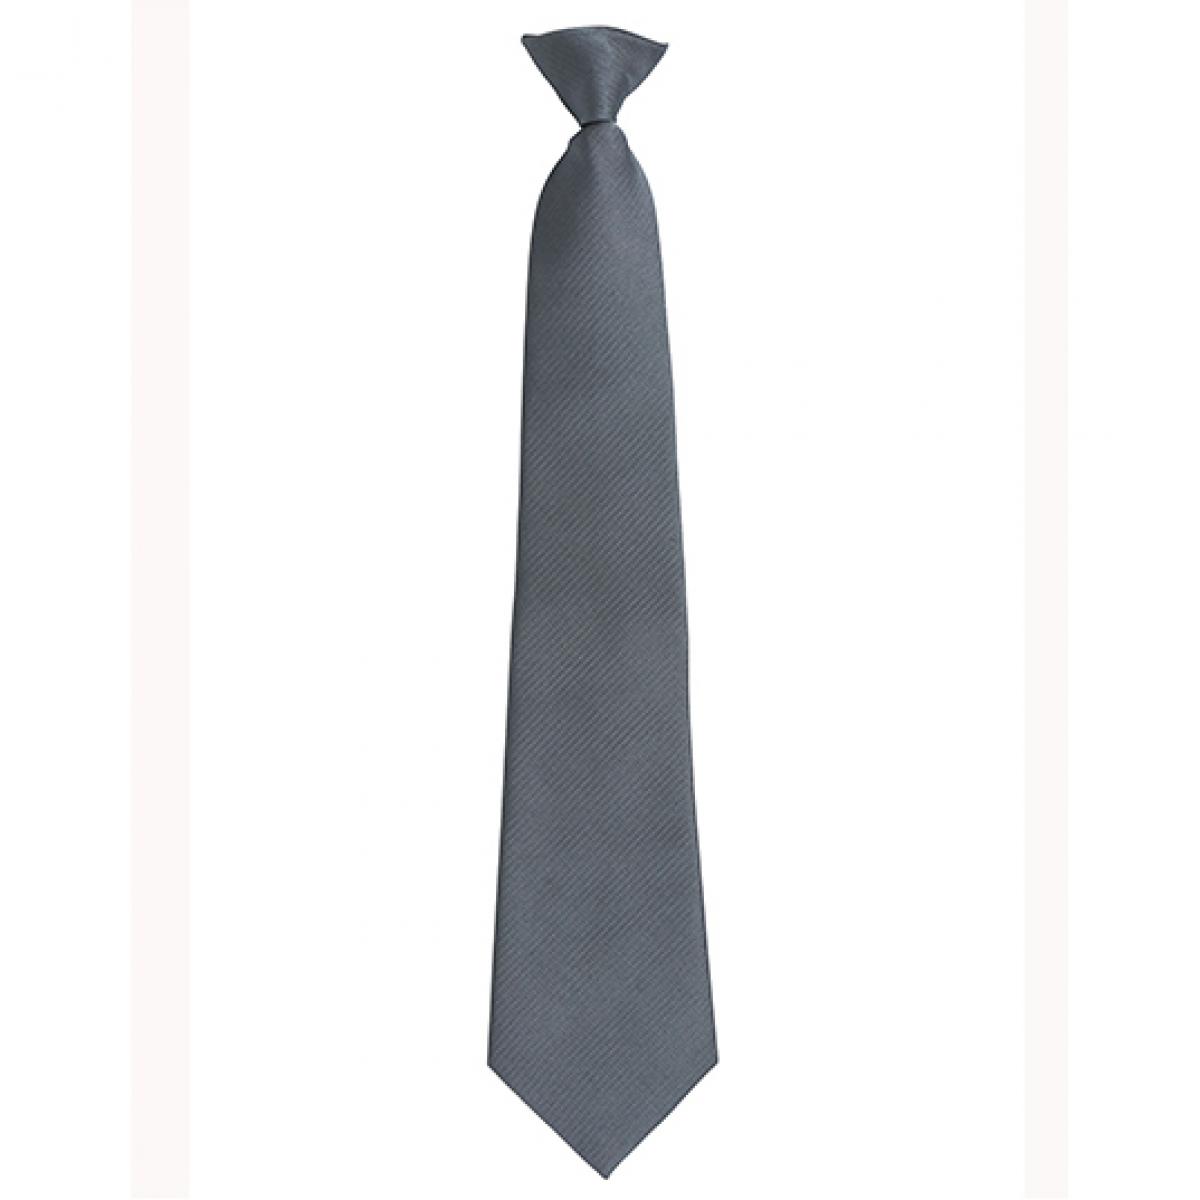 Hersteller: Premier Workwear Herstellernummer: PR785 Artikelbezeichnung: ´Colours´ Fashion Clip Tie Farbe: Dark Grey (ca. Pantone 431)